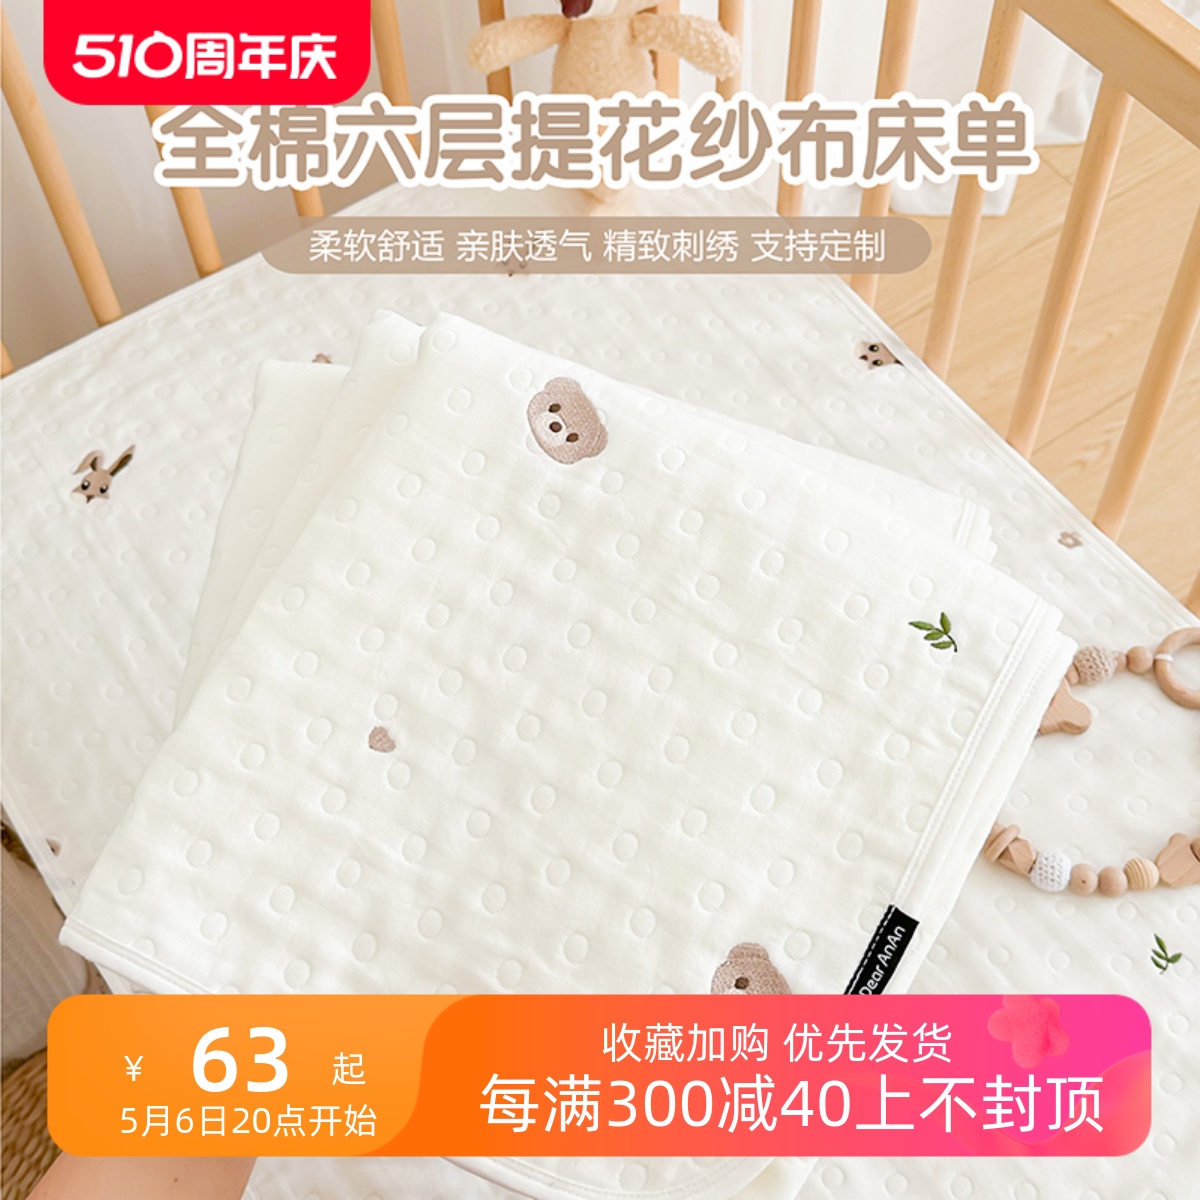 新生婴儿床单纯棉a类宝宝床上用品幼儿园儿童拼接床床垫四季通用